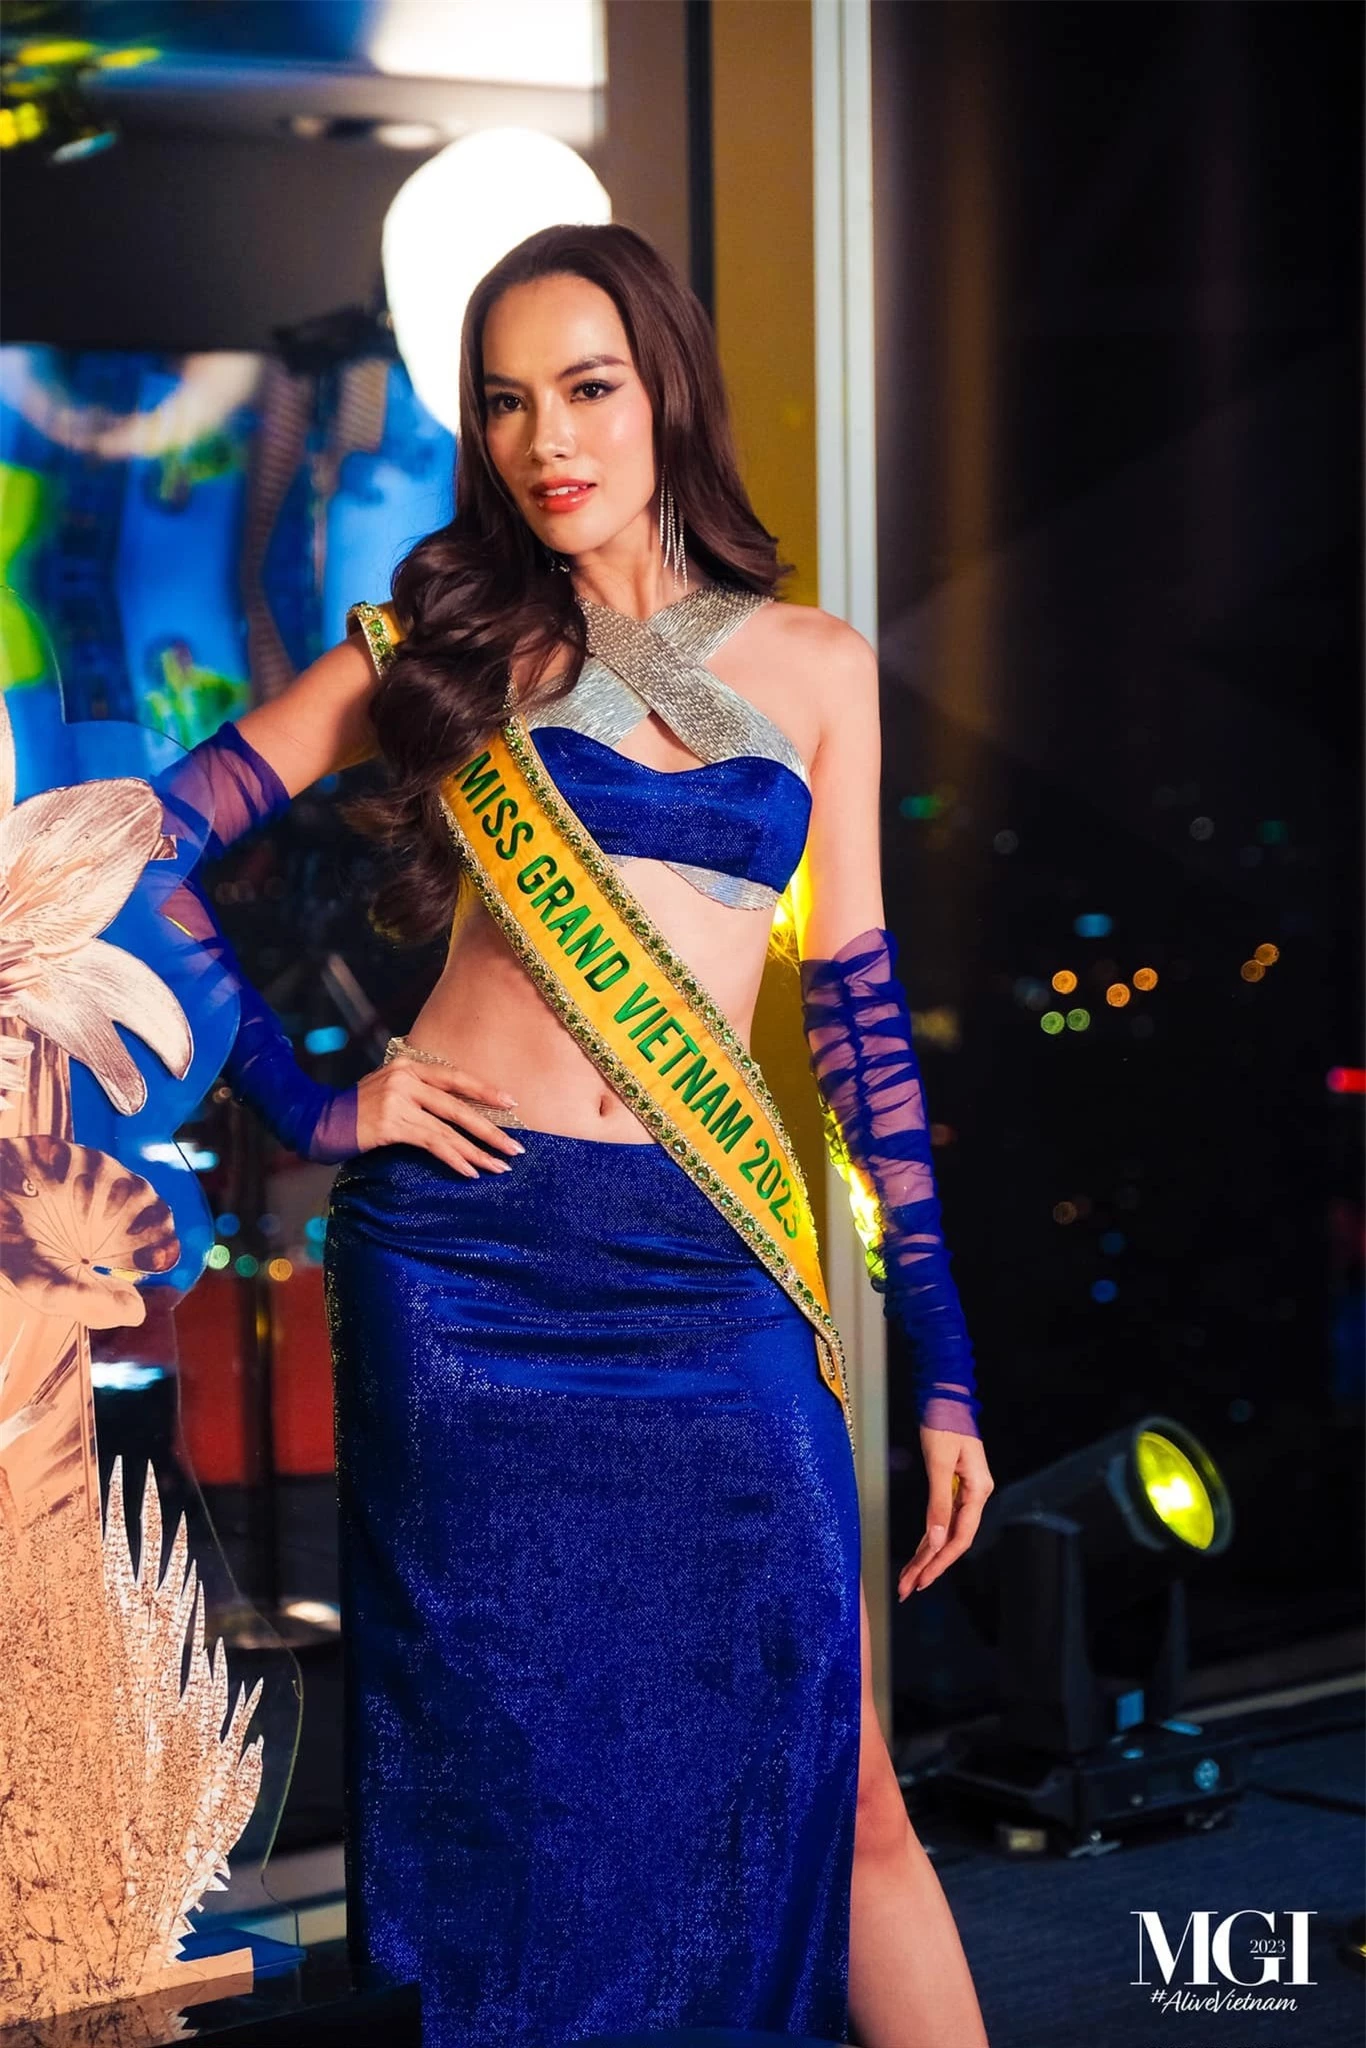 Loạt váy cut-out táo bạo của Lê Hoàng Phương ở Hoa hậu Hòa bình ảnh 9